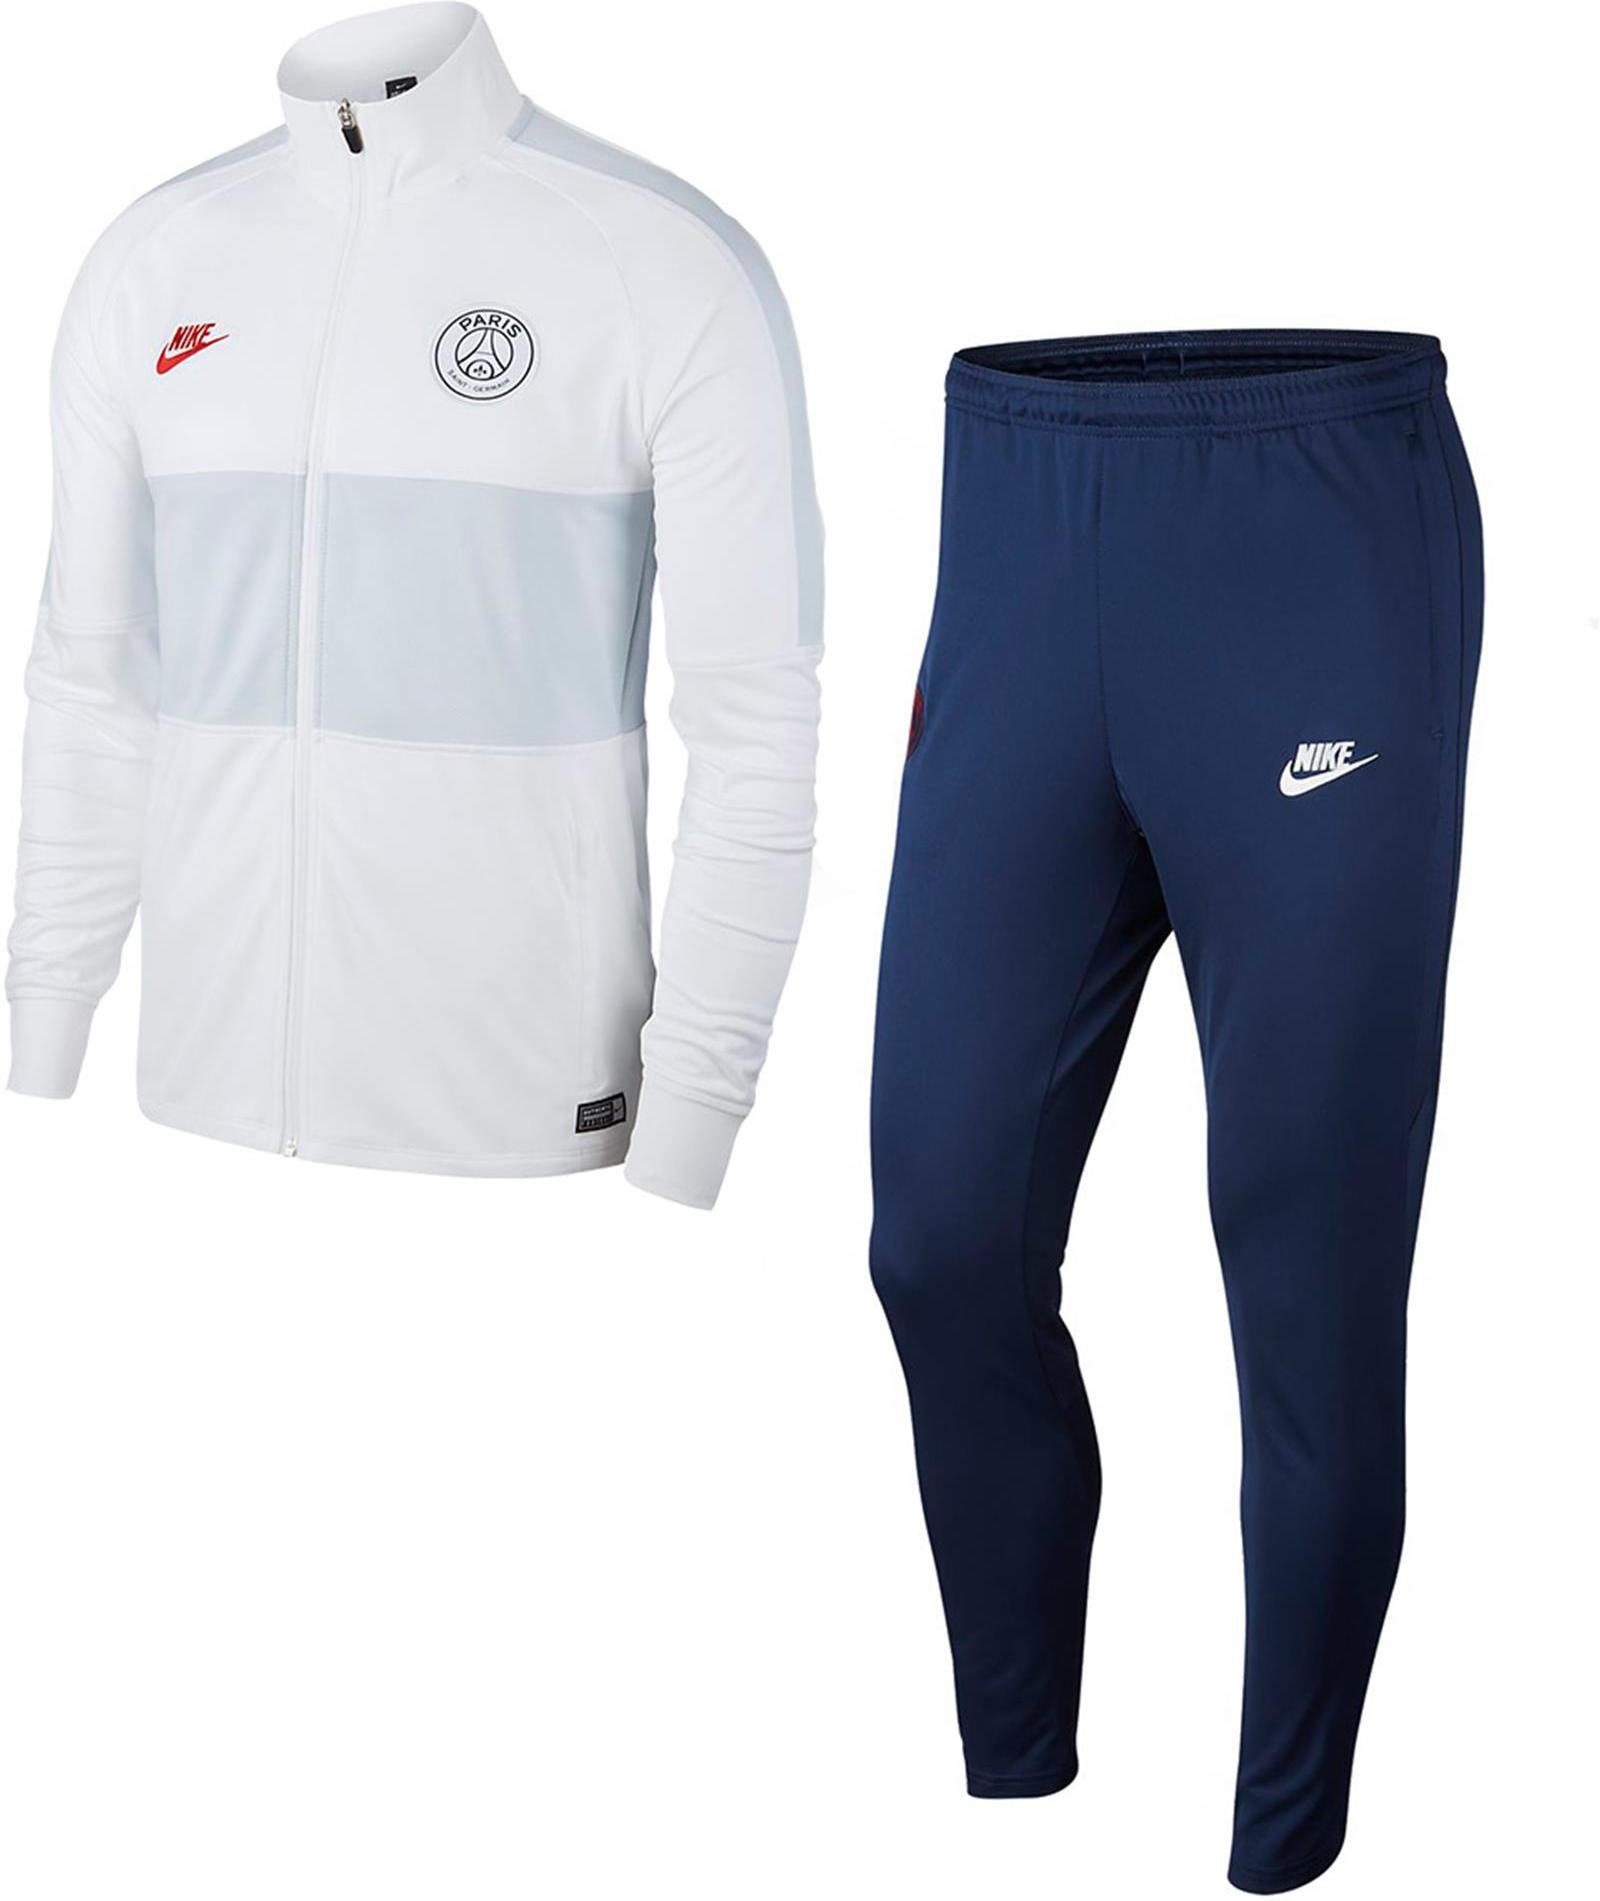 Trening Nike PSG M NK DRY STRK TRK SUIT K 2019/20